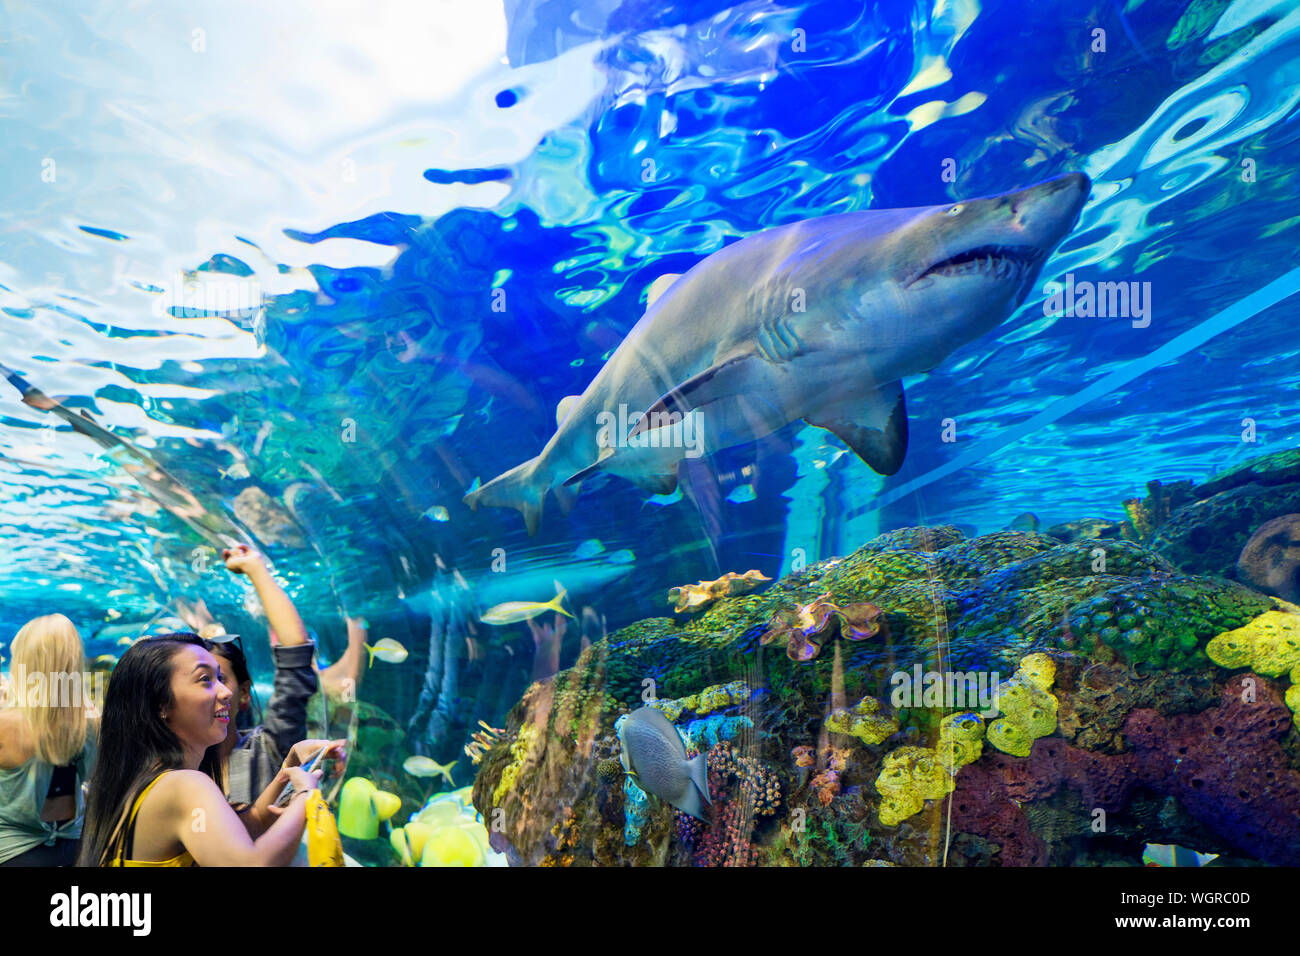 Ripley's Aquarium of Canada, personnes regardant les requins et d'autres à la vie de la mer un aquarium public de Toronto, les touristes de l'observation des animaux Banque D'Images